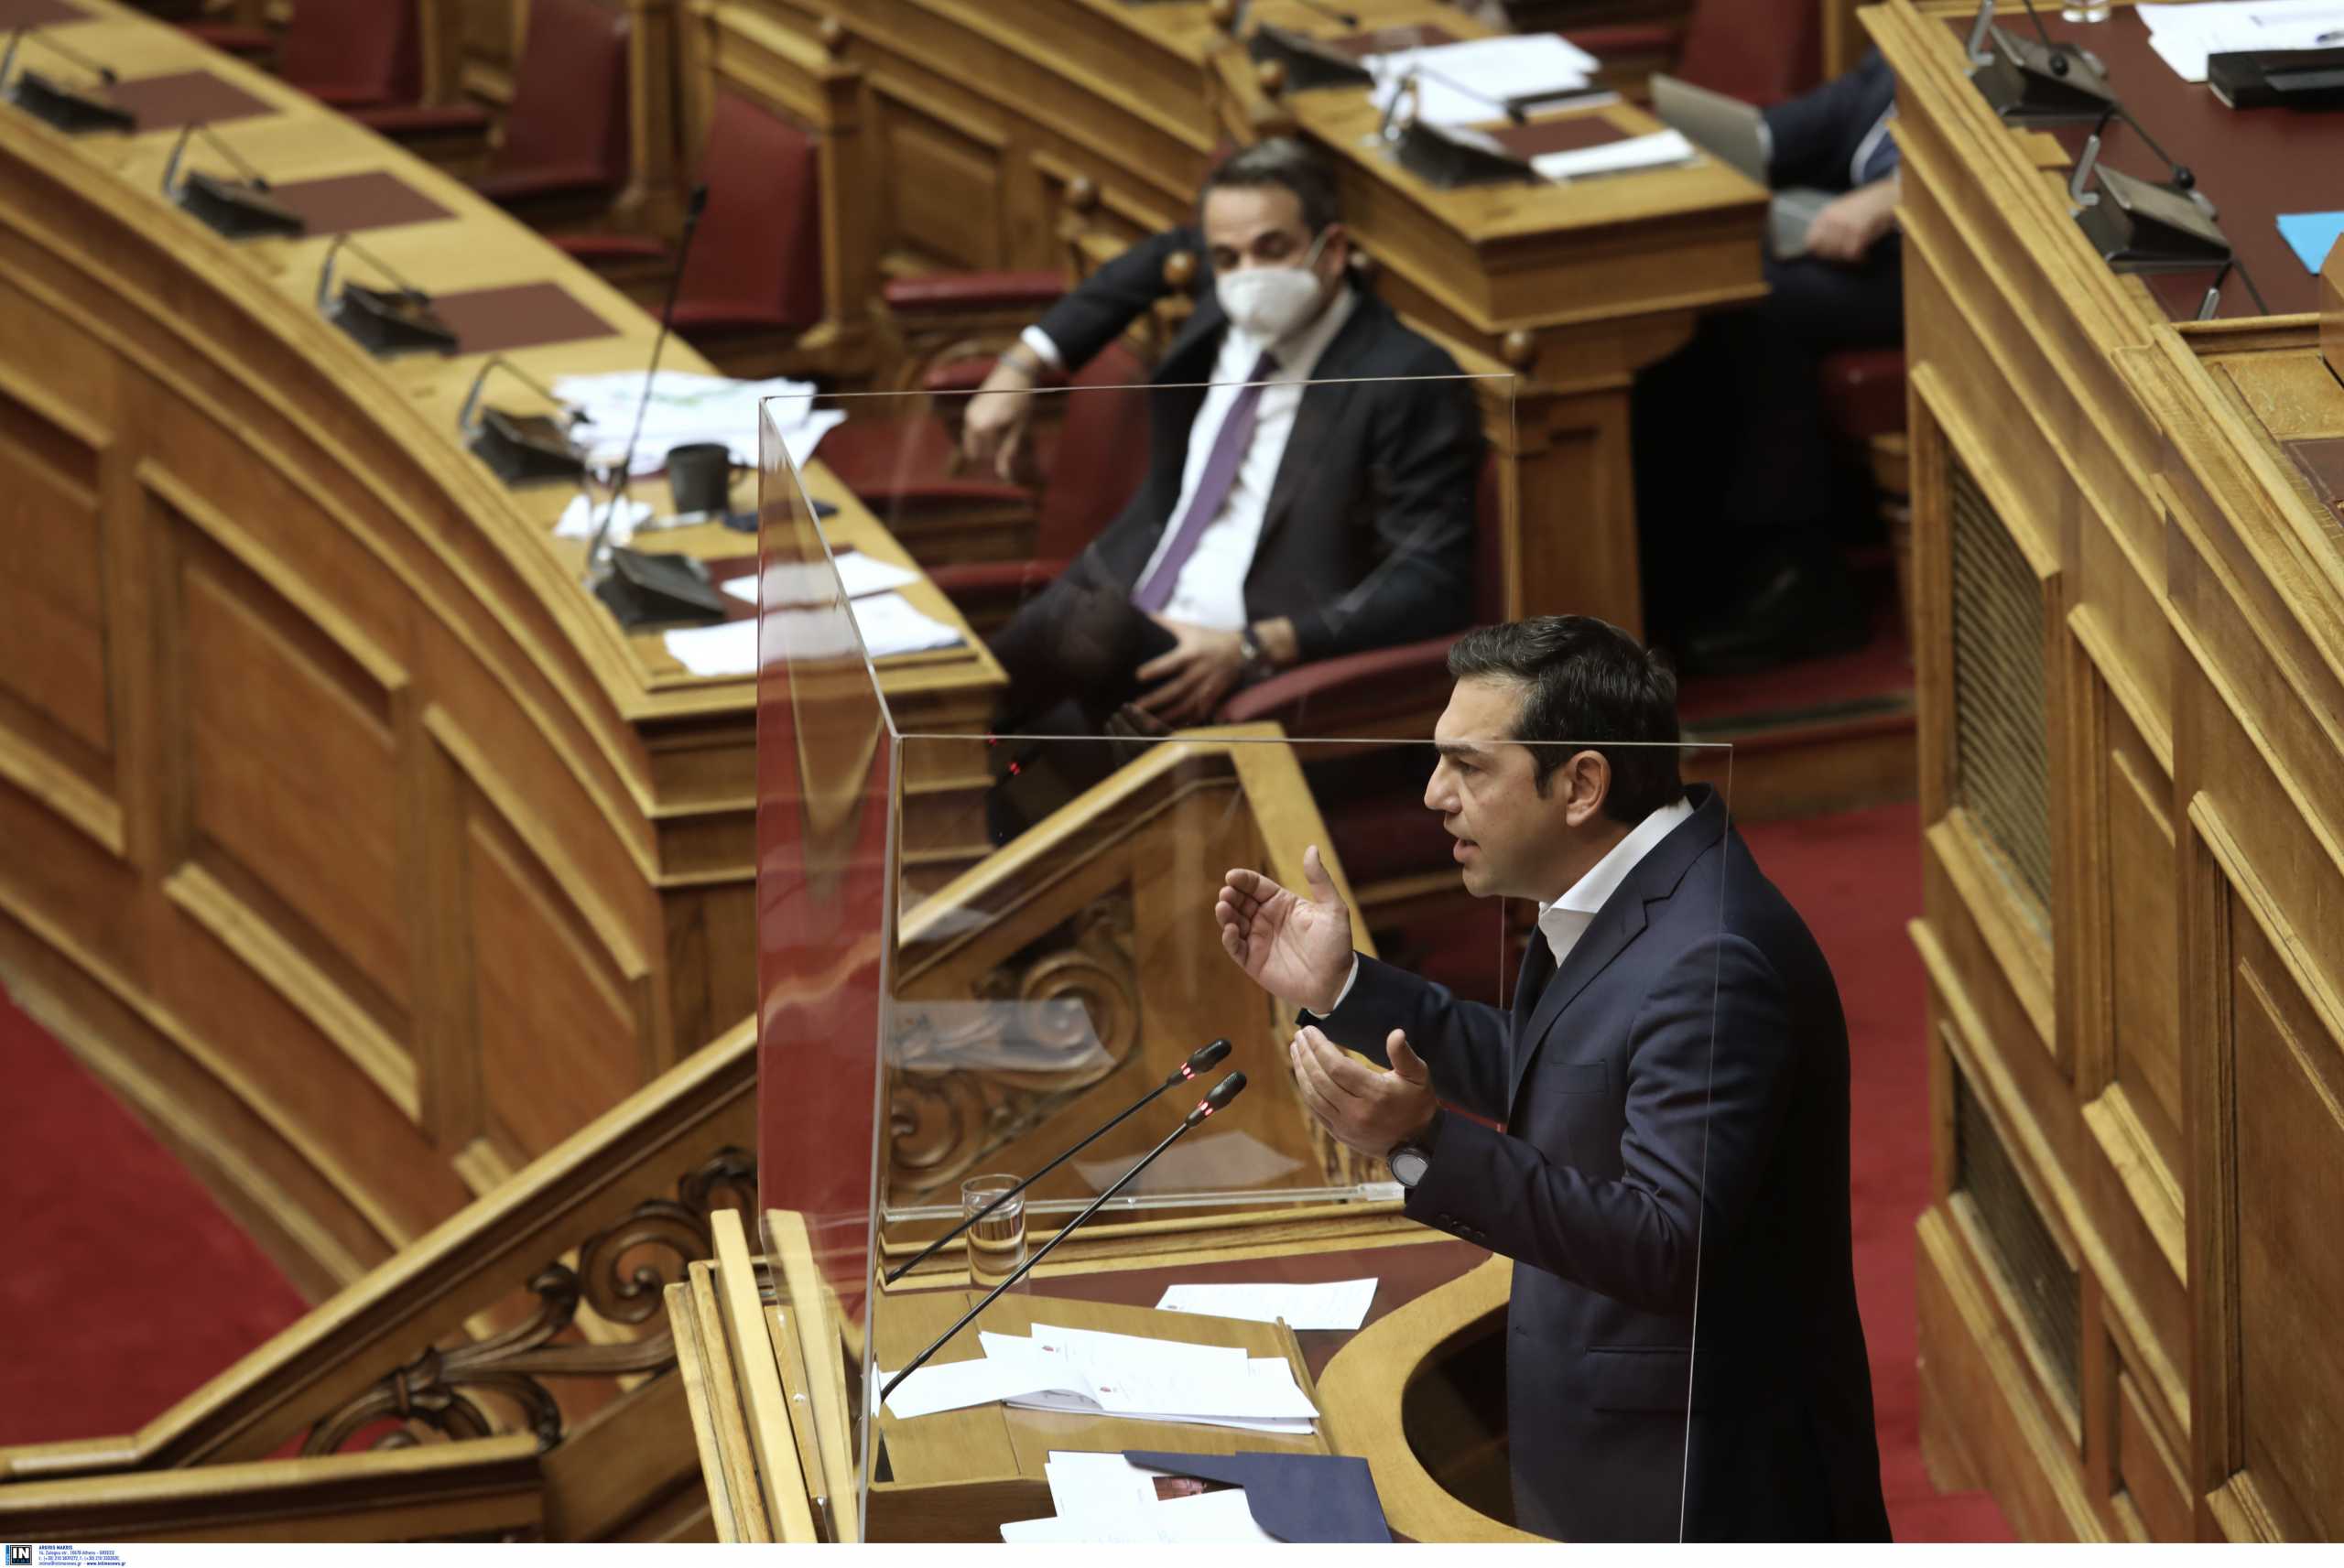 Τελευταία αντιπαράθεση Κυριάκου Μητσοτάκη – Αλέξη Τσίπρα στην Βουλή πριν τις εκλογές; Ανοιχτό το ενδεχόμενο ανακοίνωσης νέων μέτρων